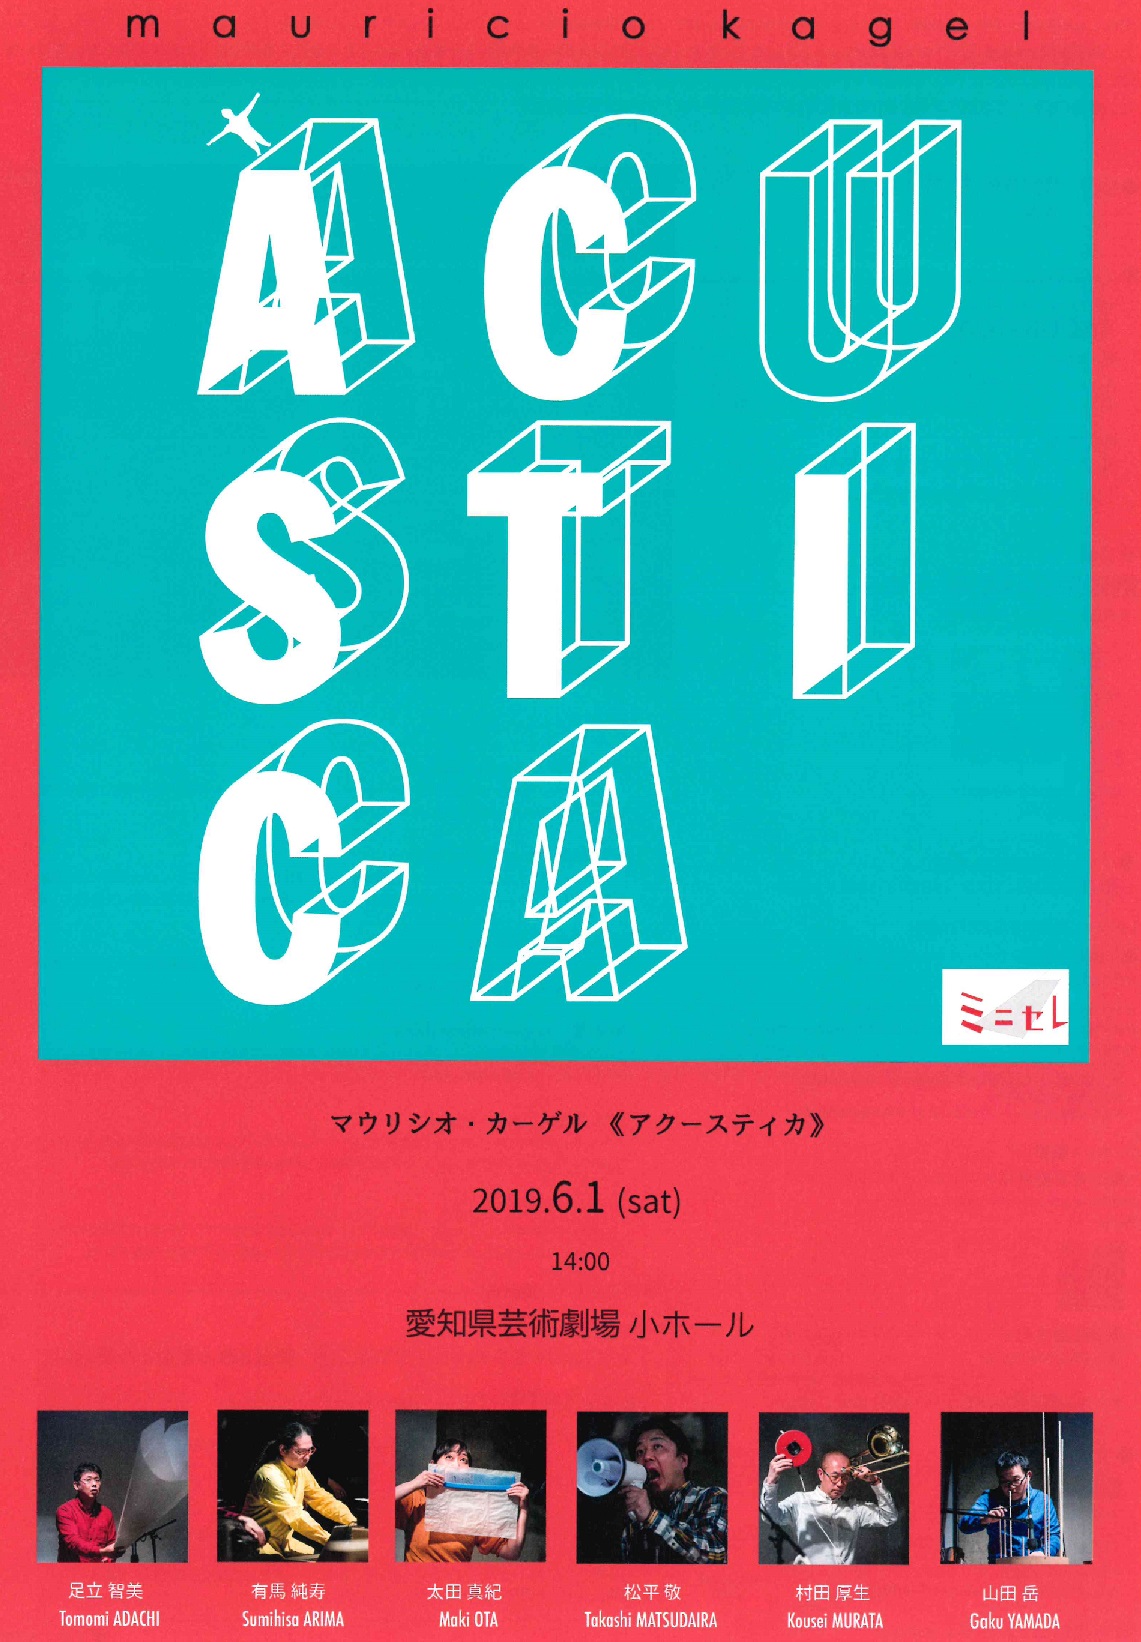 マウリシオ カーゲル アクースティカ コンサート Culture Nippon